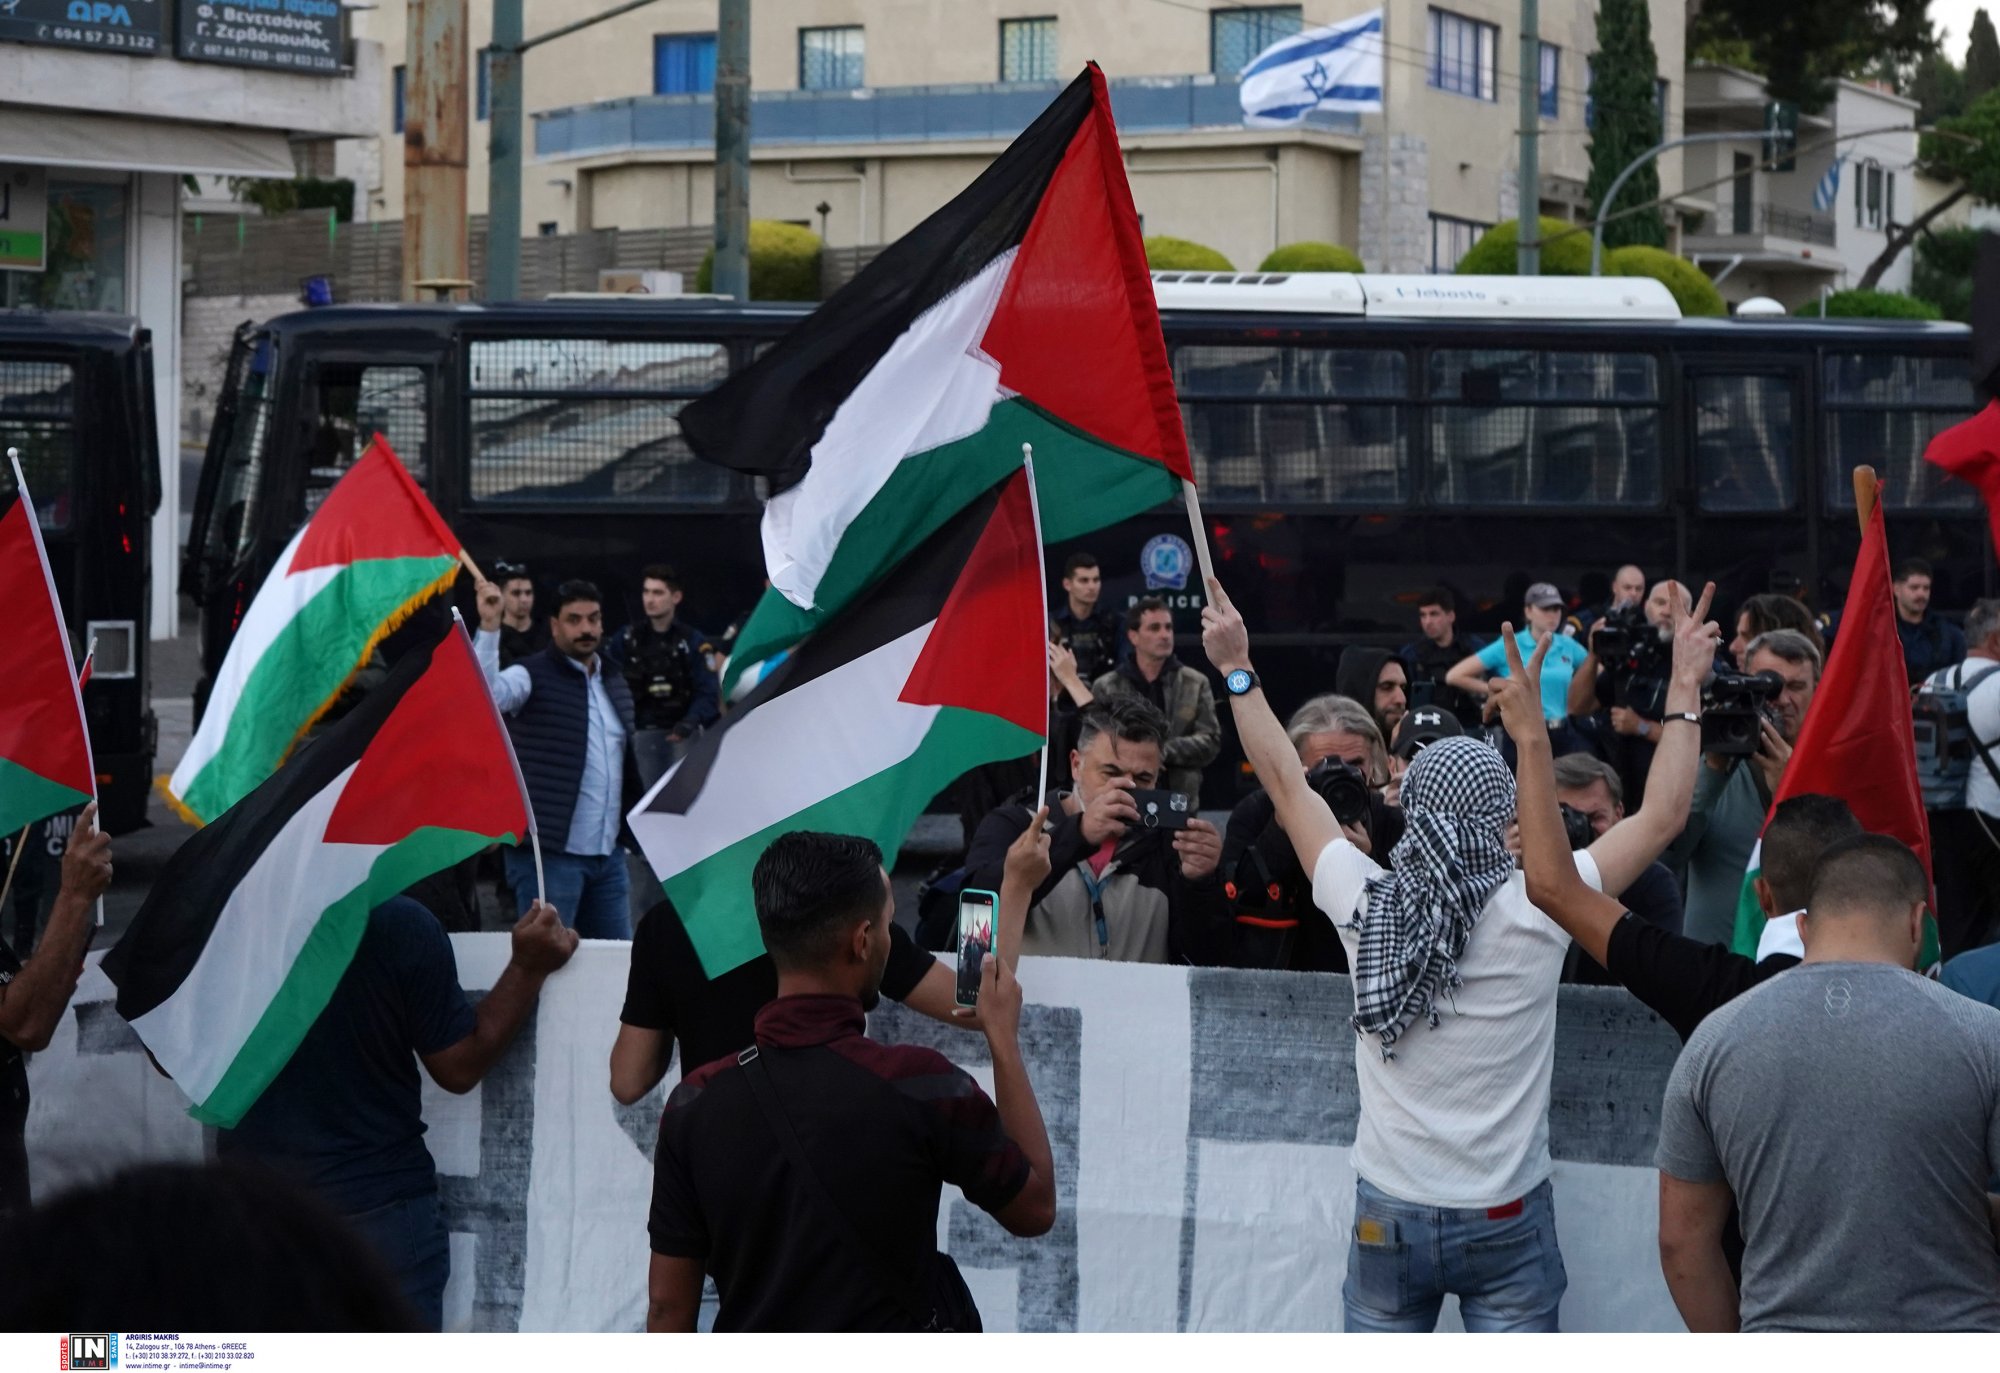 Έρχεται πλήθος συγκεντρώσεων υπέρ της Παλαιστίνης - Σε ποιες πόλεις θα πραγματοποιηθούν